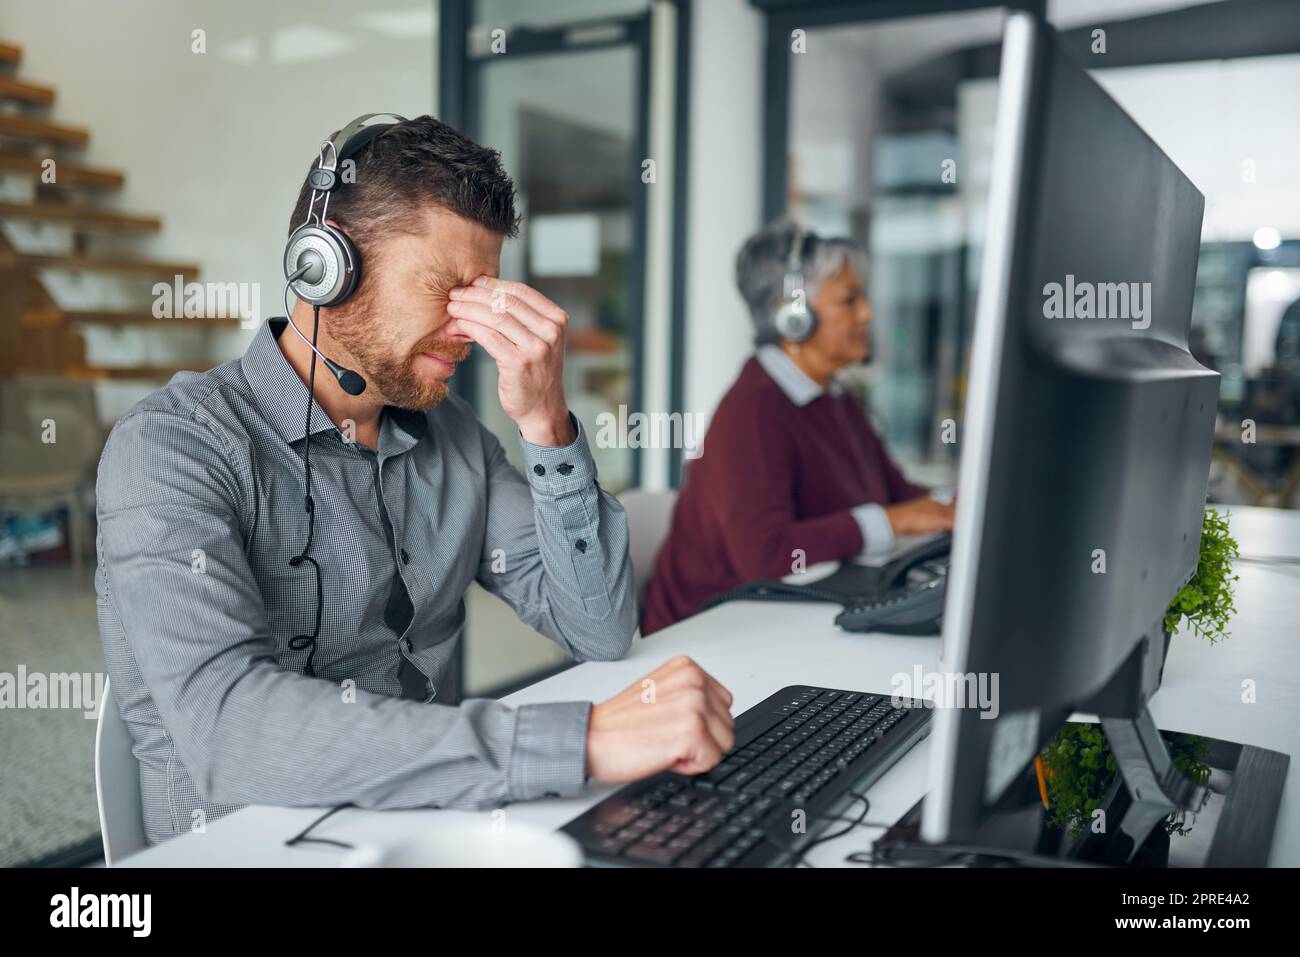 Der Tag hat einige Spannungen mit sich gebracht. Ein reifer Mann, der gestresst aussicht, während er an einem Computer in einem Callcenter arbeitet. Stockfoto